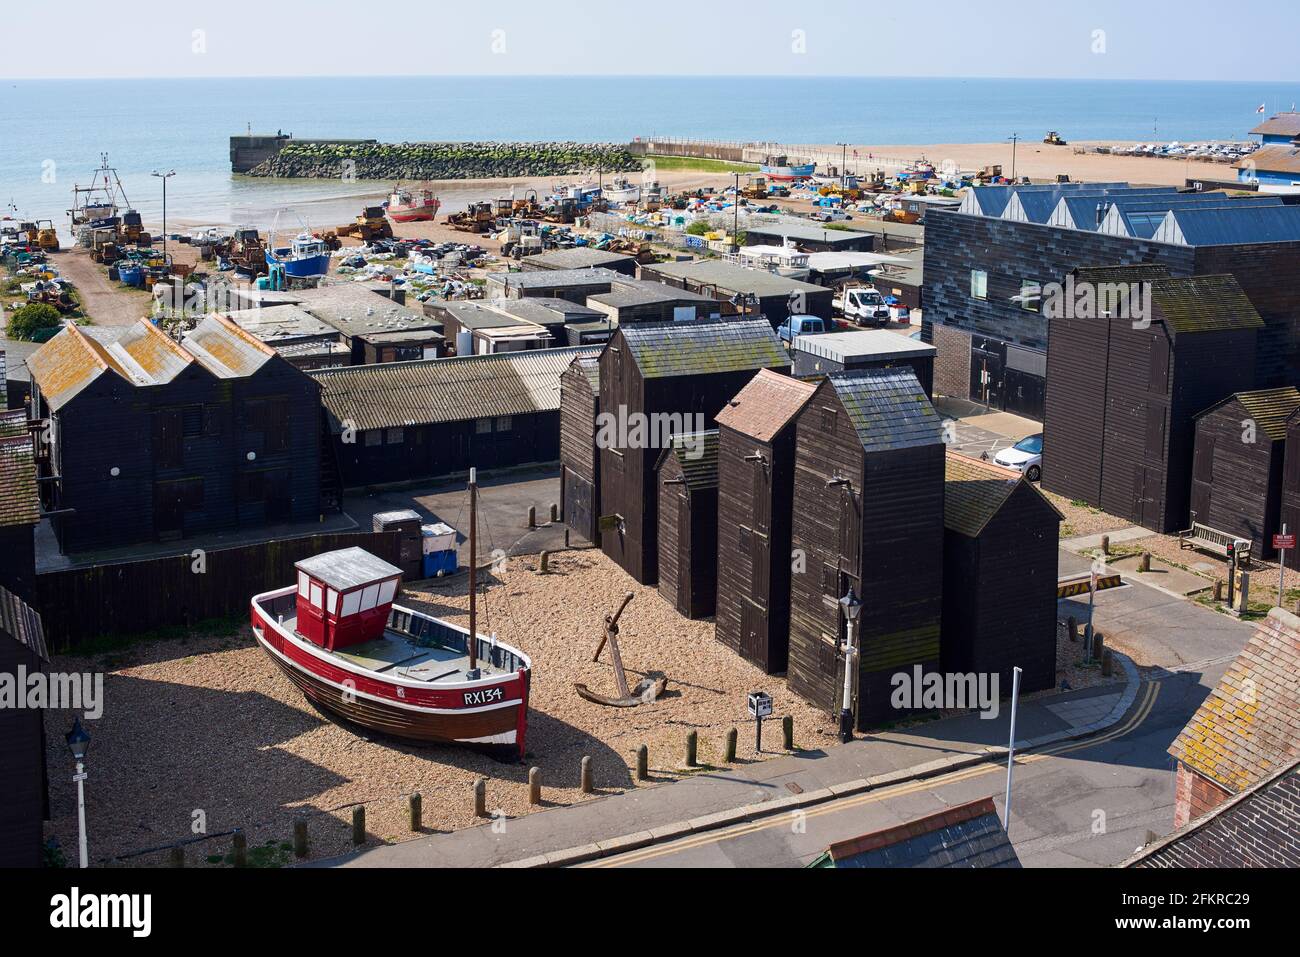 Le quartier de pêche et la plage de Hastings, East Sussex, Royaume-Uni, avec des bateaux de pêche et des boutiques de filet Banque D'Images